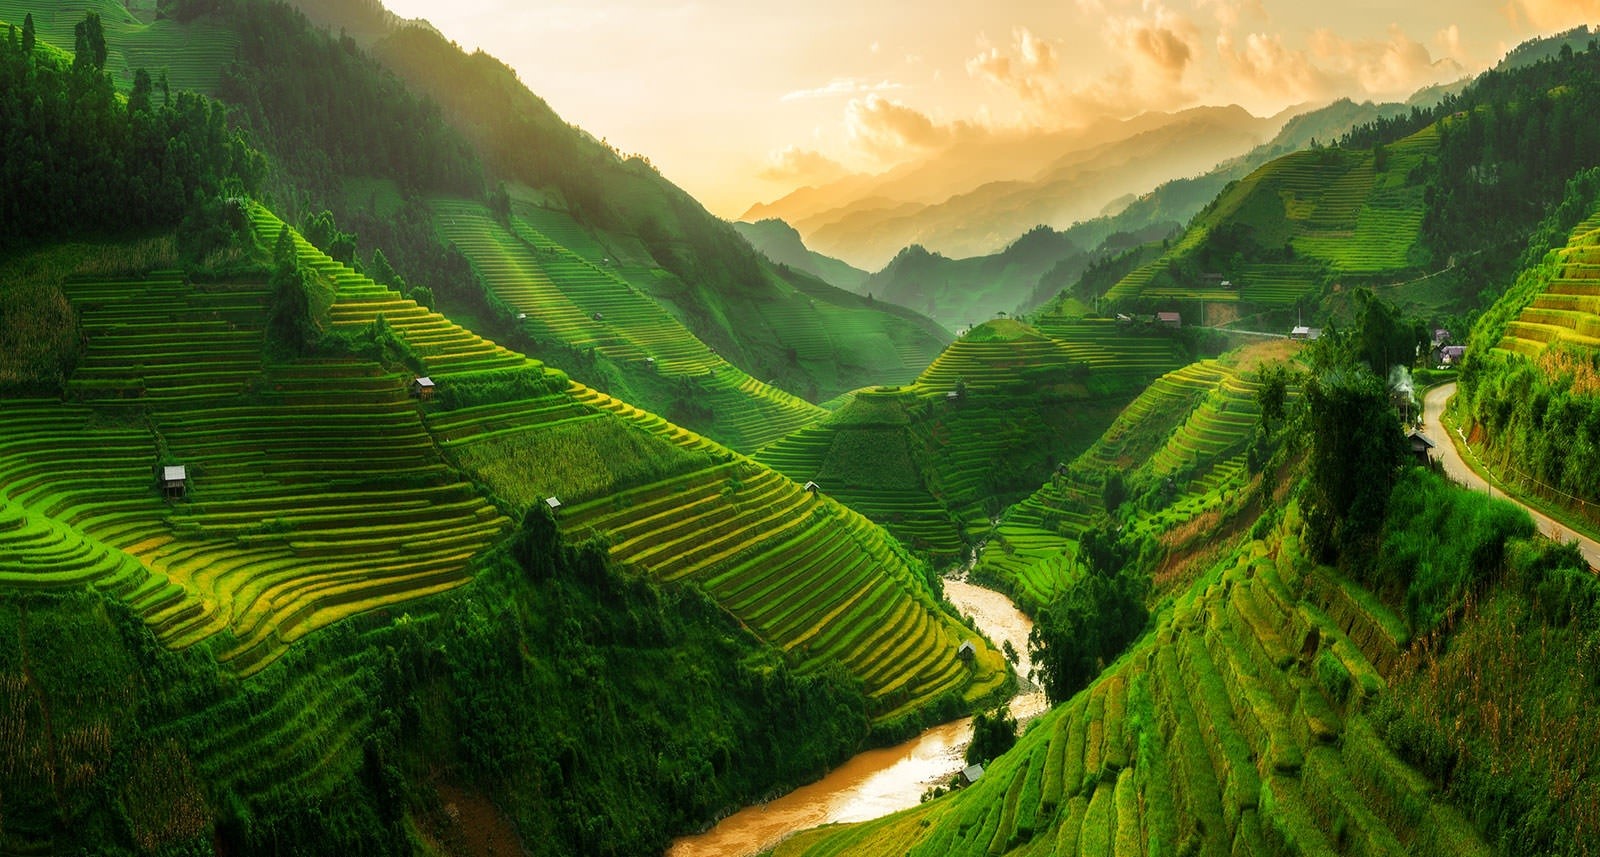 thuy si 1 Ngày Việt Nam tại Thụy Sỹ 2021: Những cảnh sắc thiên nhiên tuyệt đẹp không thể bỏ lỡ